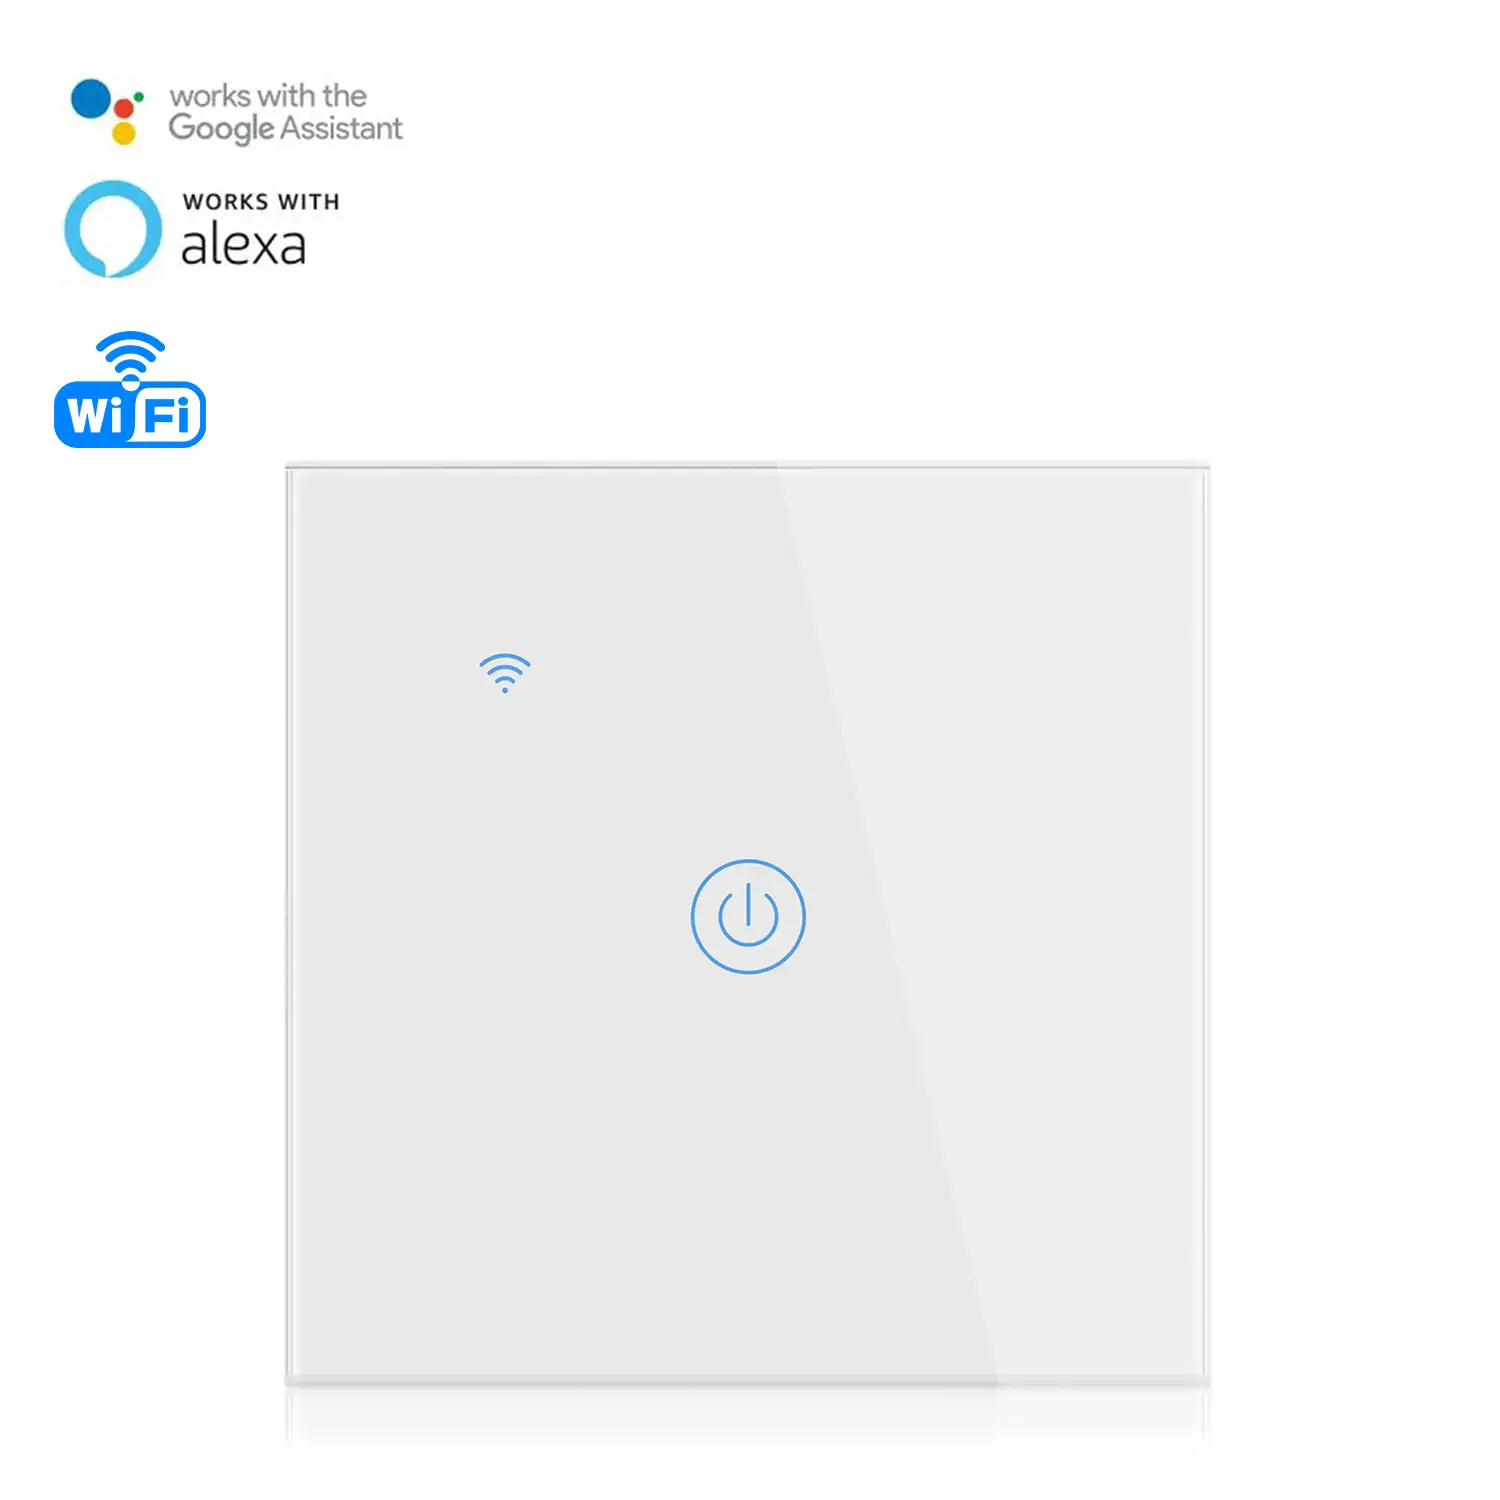 Interruptor Wifi Smarthome con 1 pulsador compatible con Amazon Alexa y Google Home